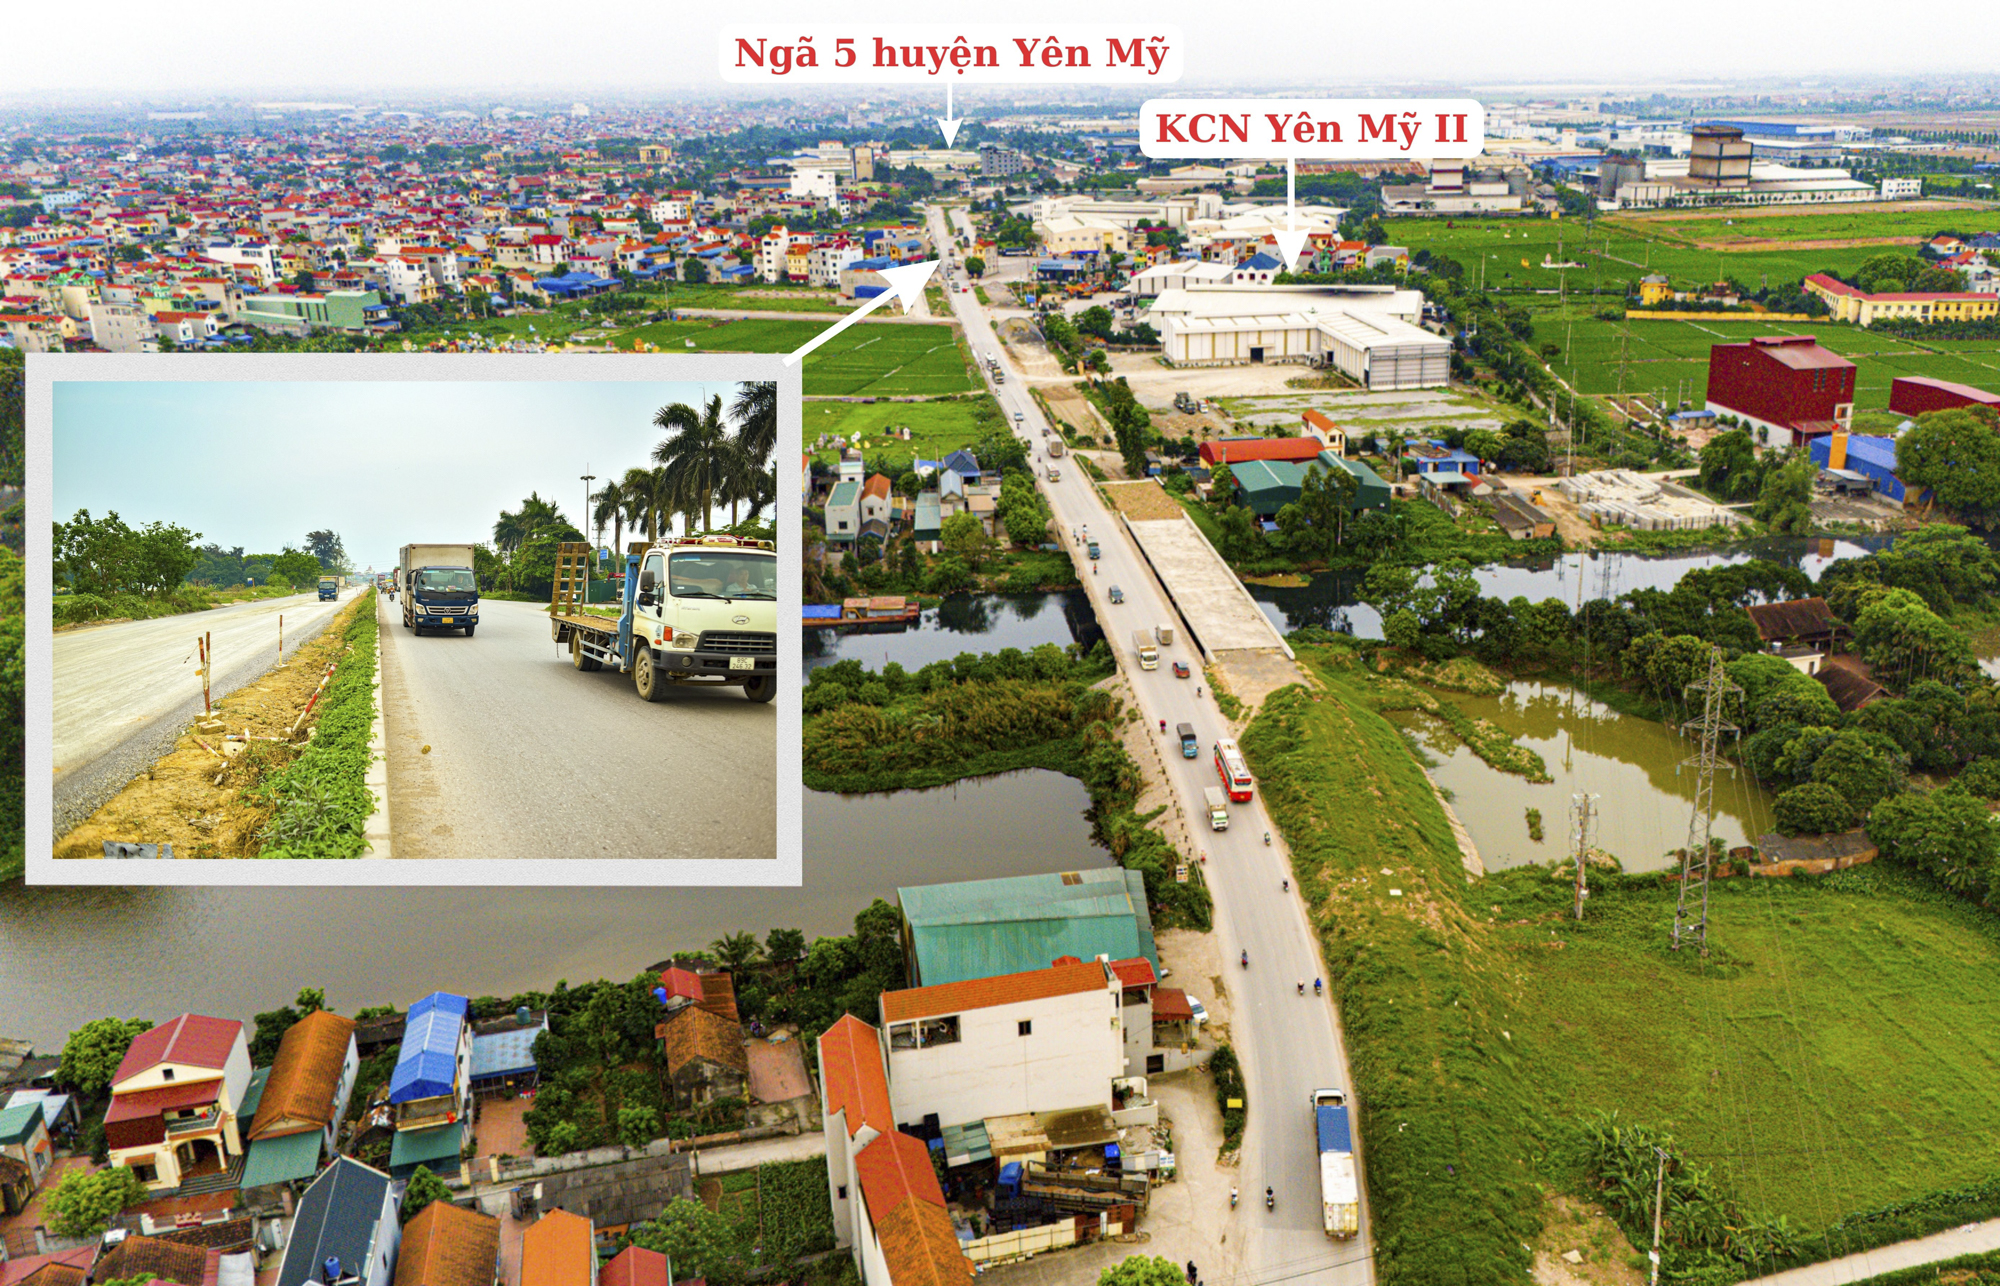 Toàn cảnh tuyến đường gần 3.000 tỷ sắp hoàn thành, kết nối hàng loạt khu công nghiệp, khu đô thị lớn ở Hưng Yên- Ảnh 8.